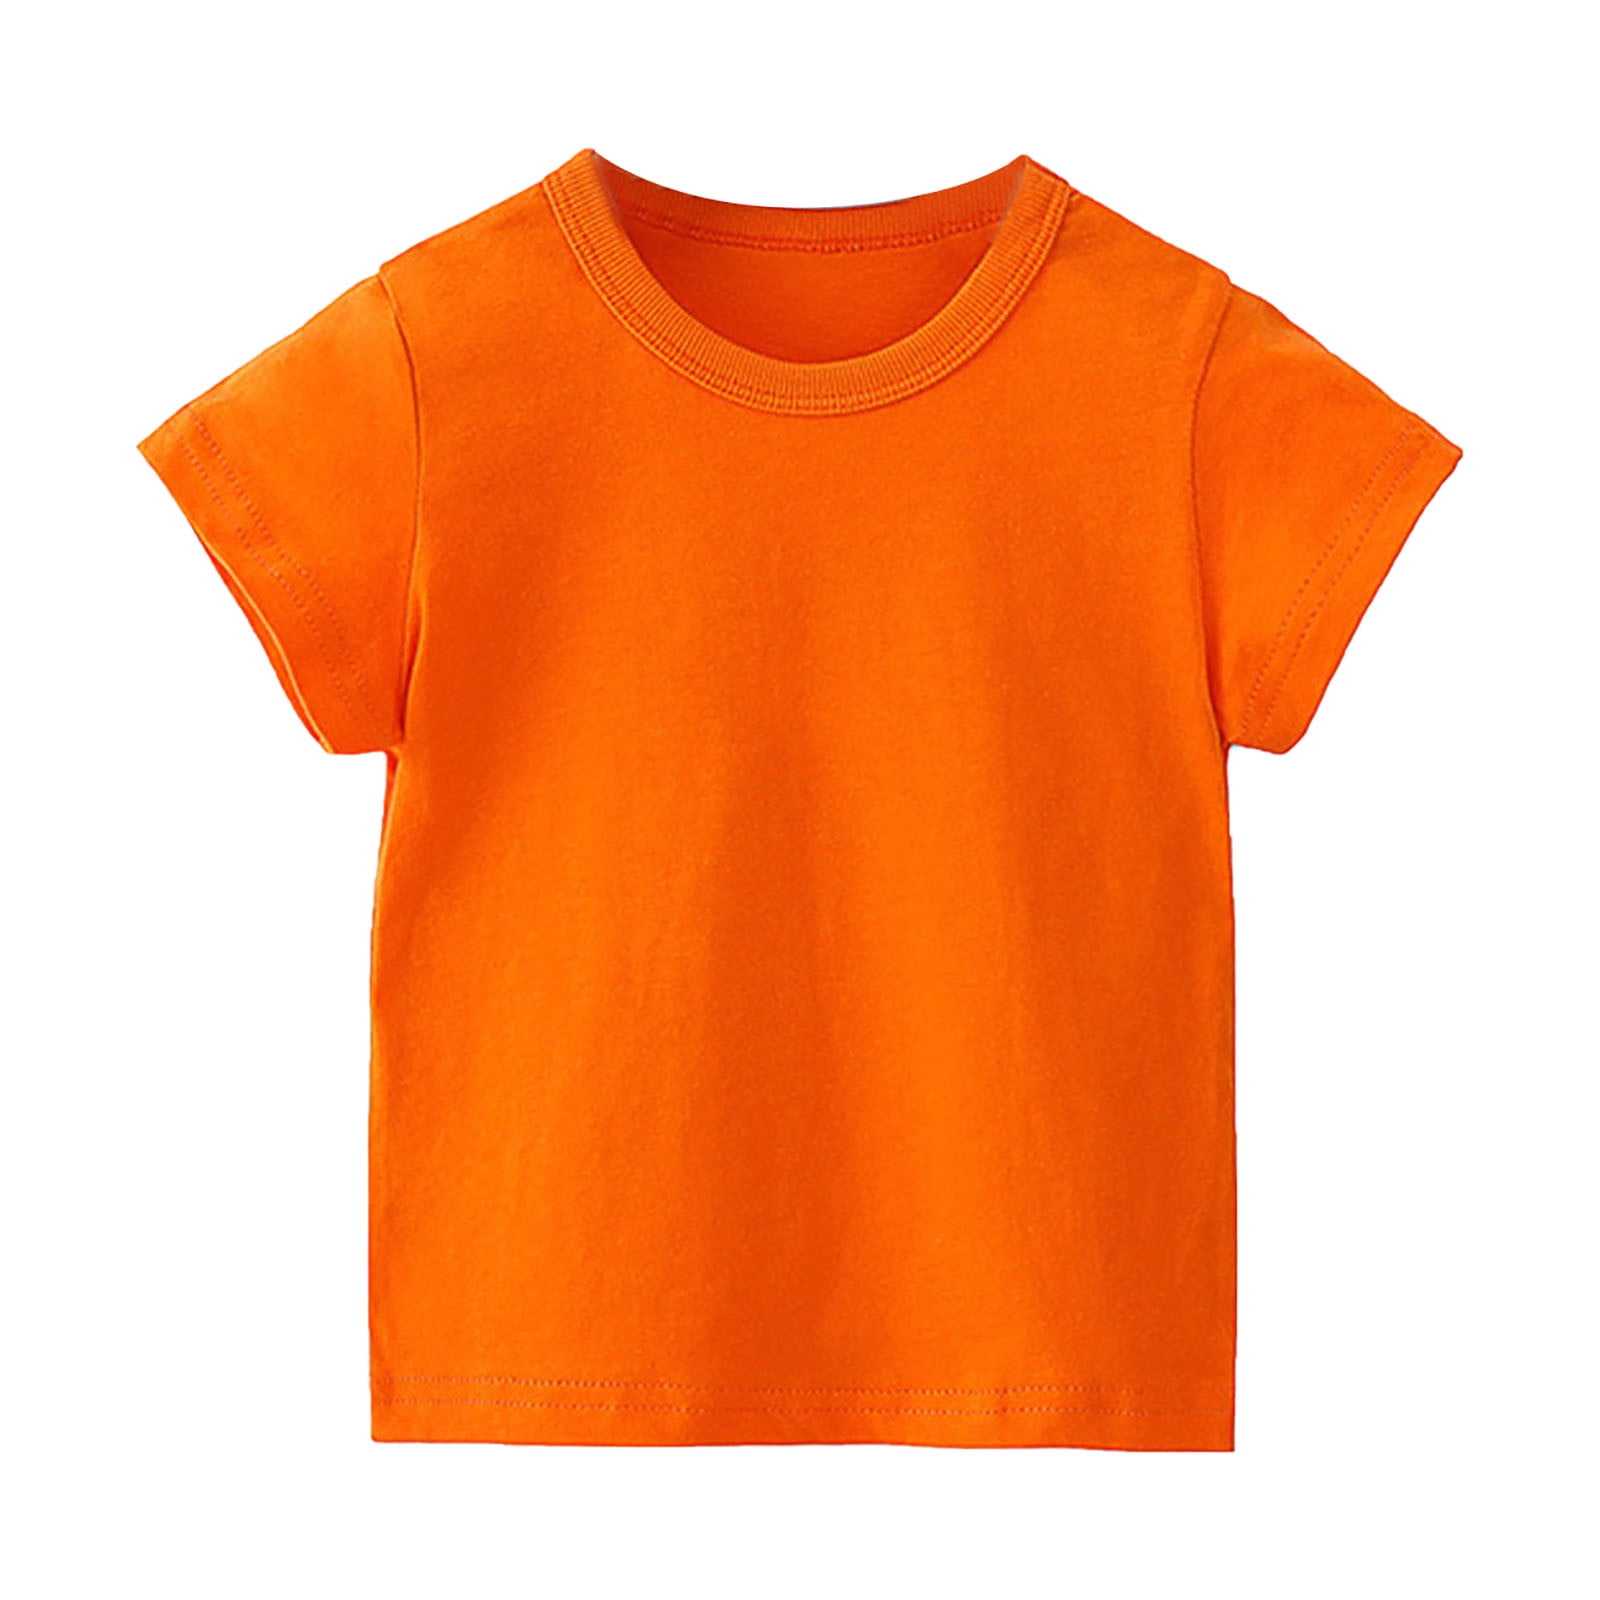 Sun Shirts in Kids average savings of 54% at Sierra